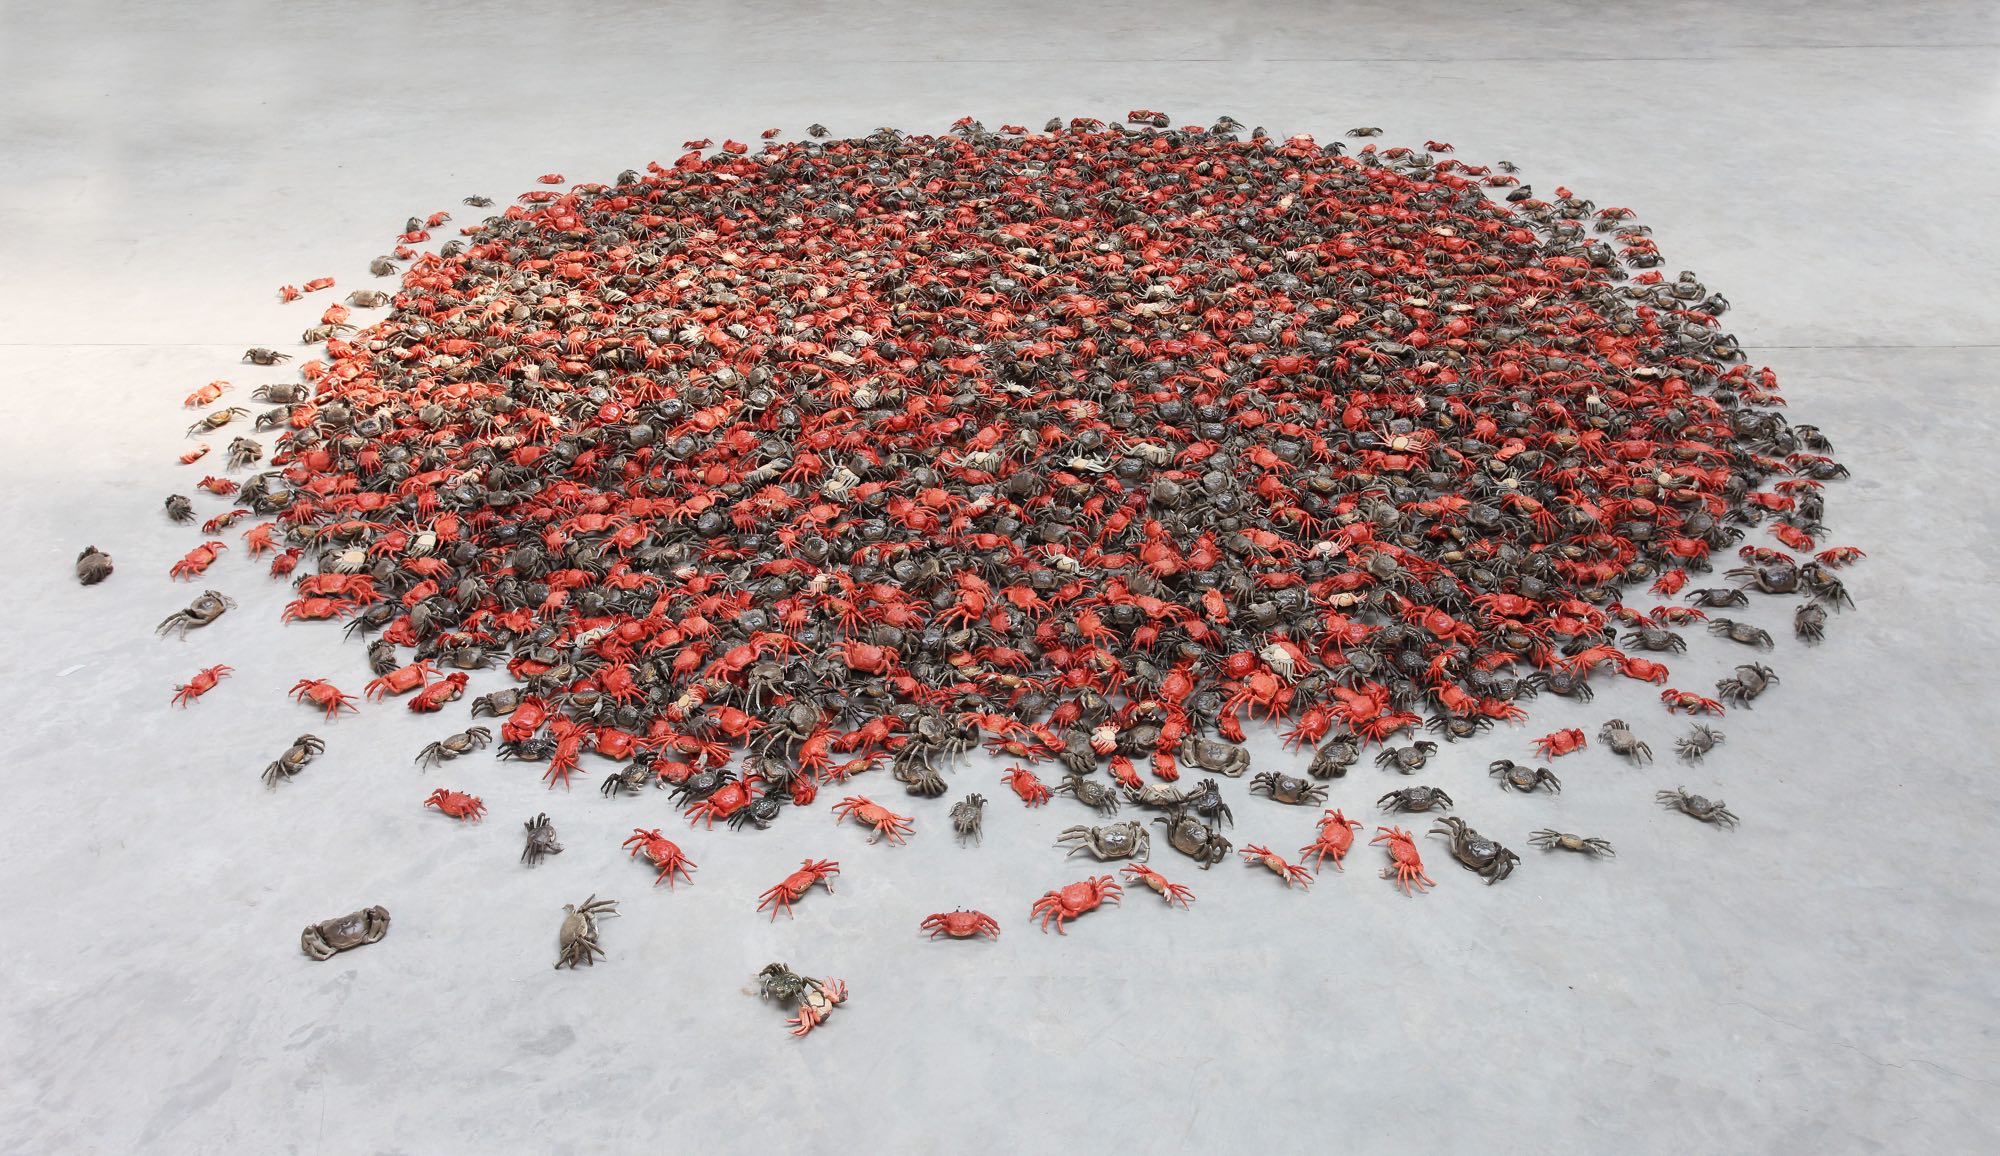 He Xie, 2011 © Ai Weiwei